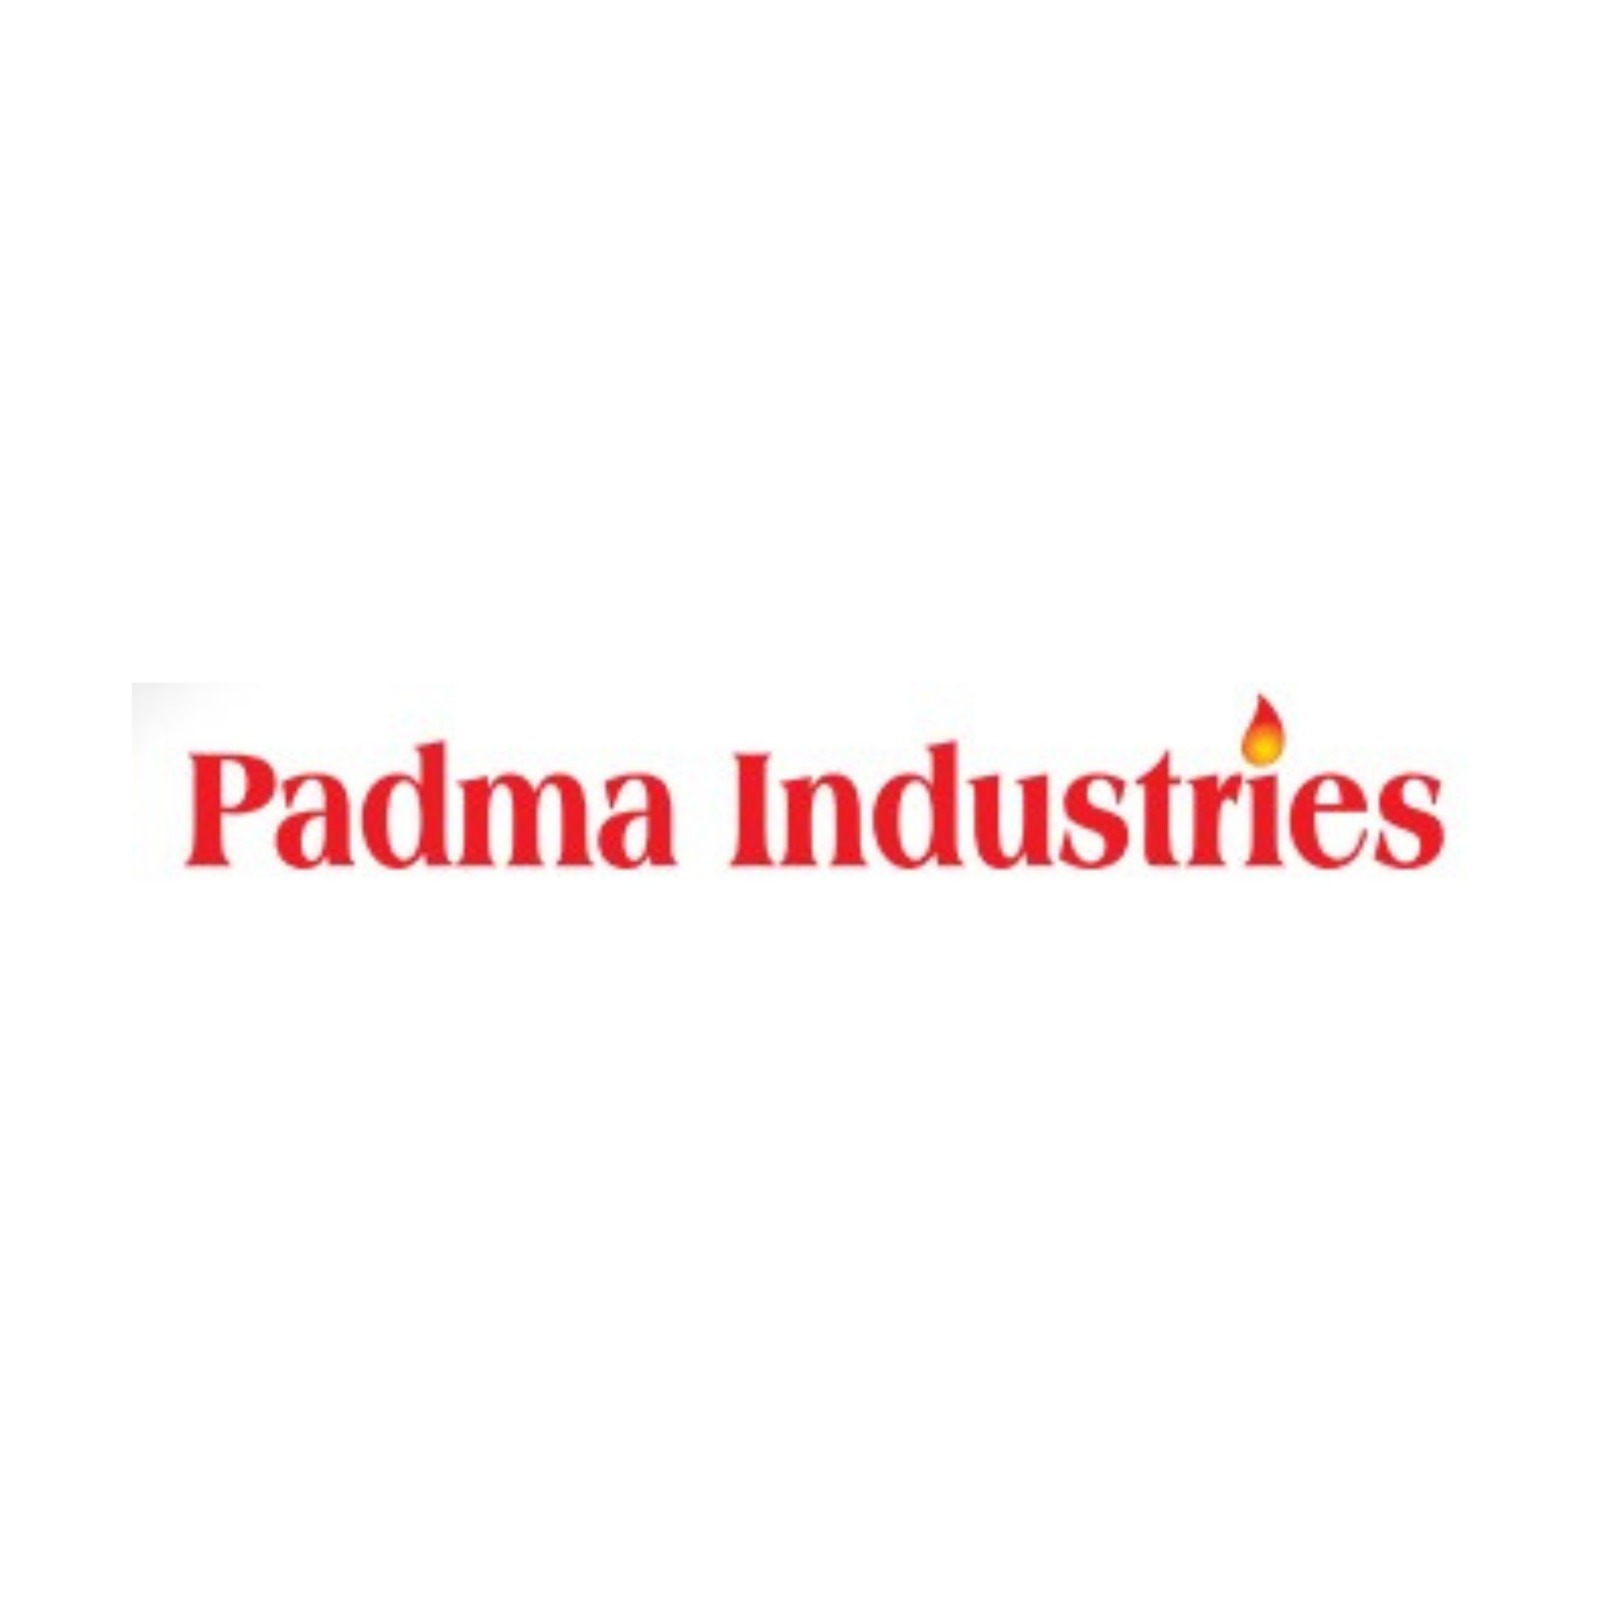 Padma Industries